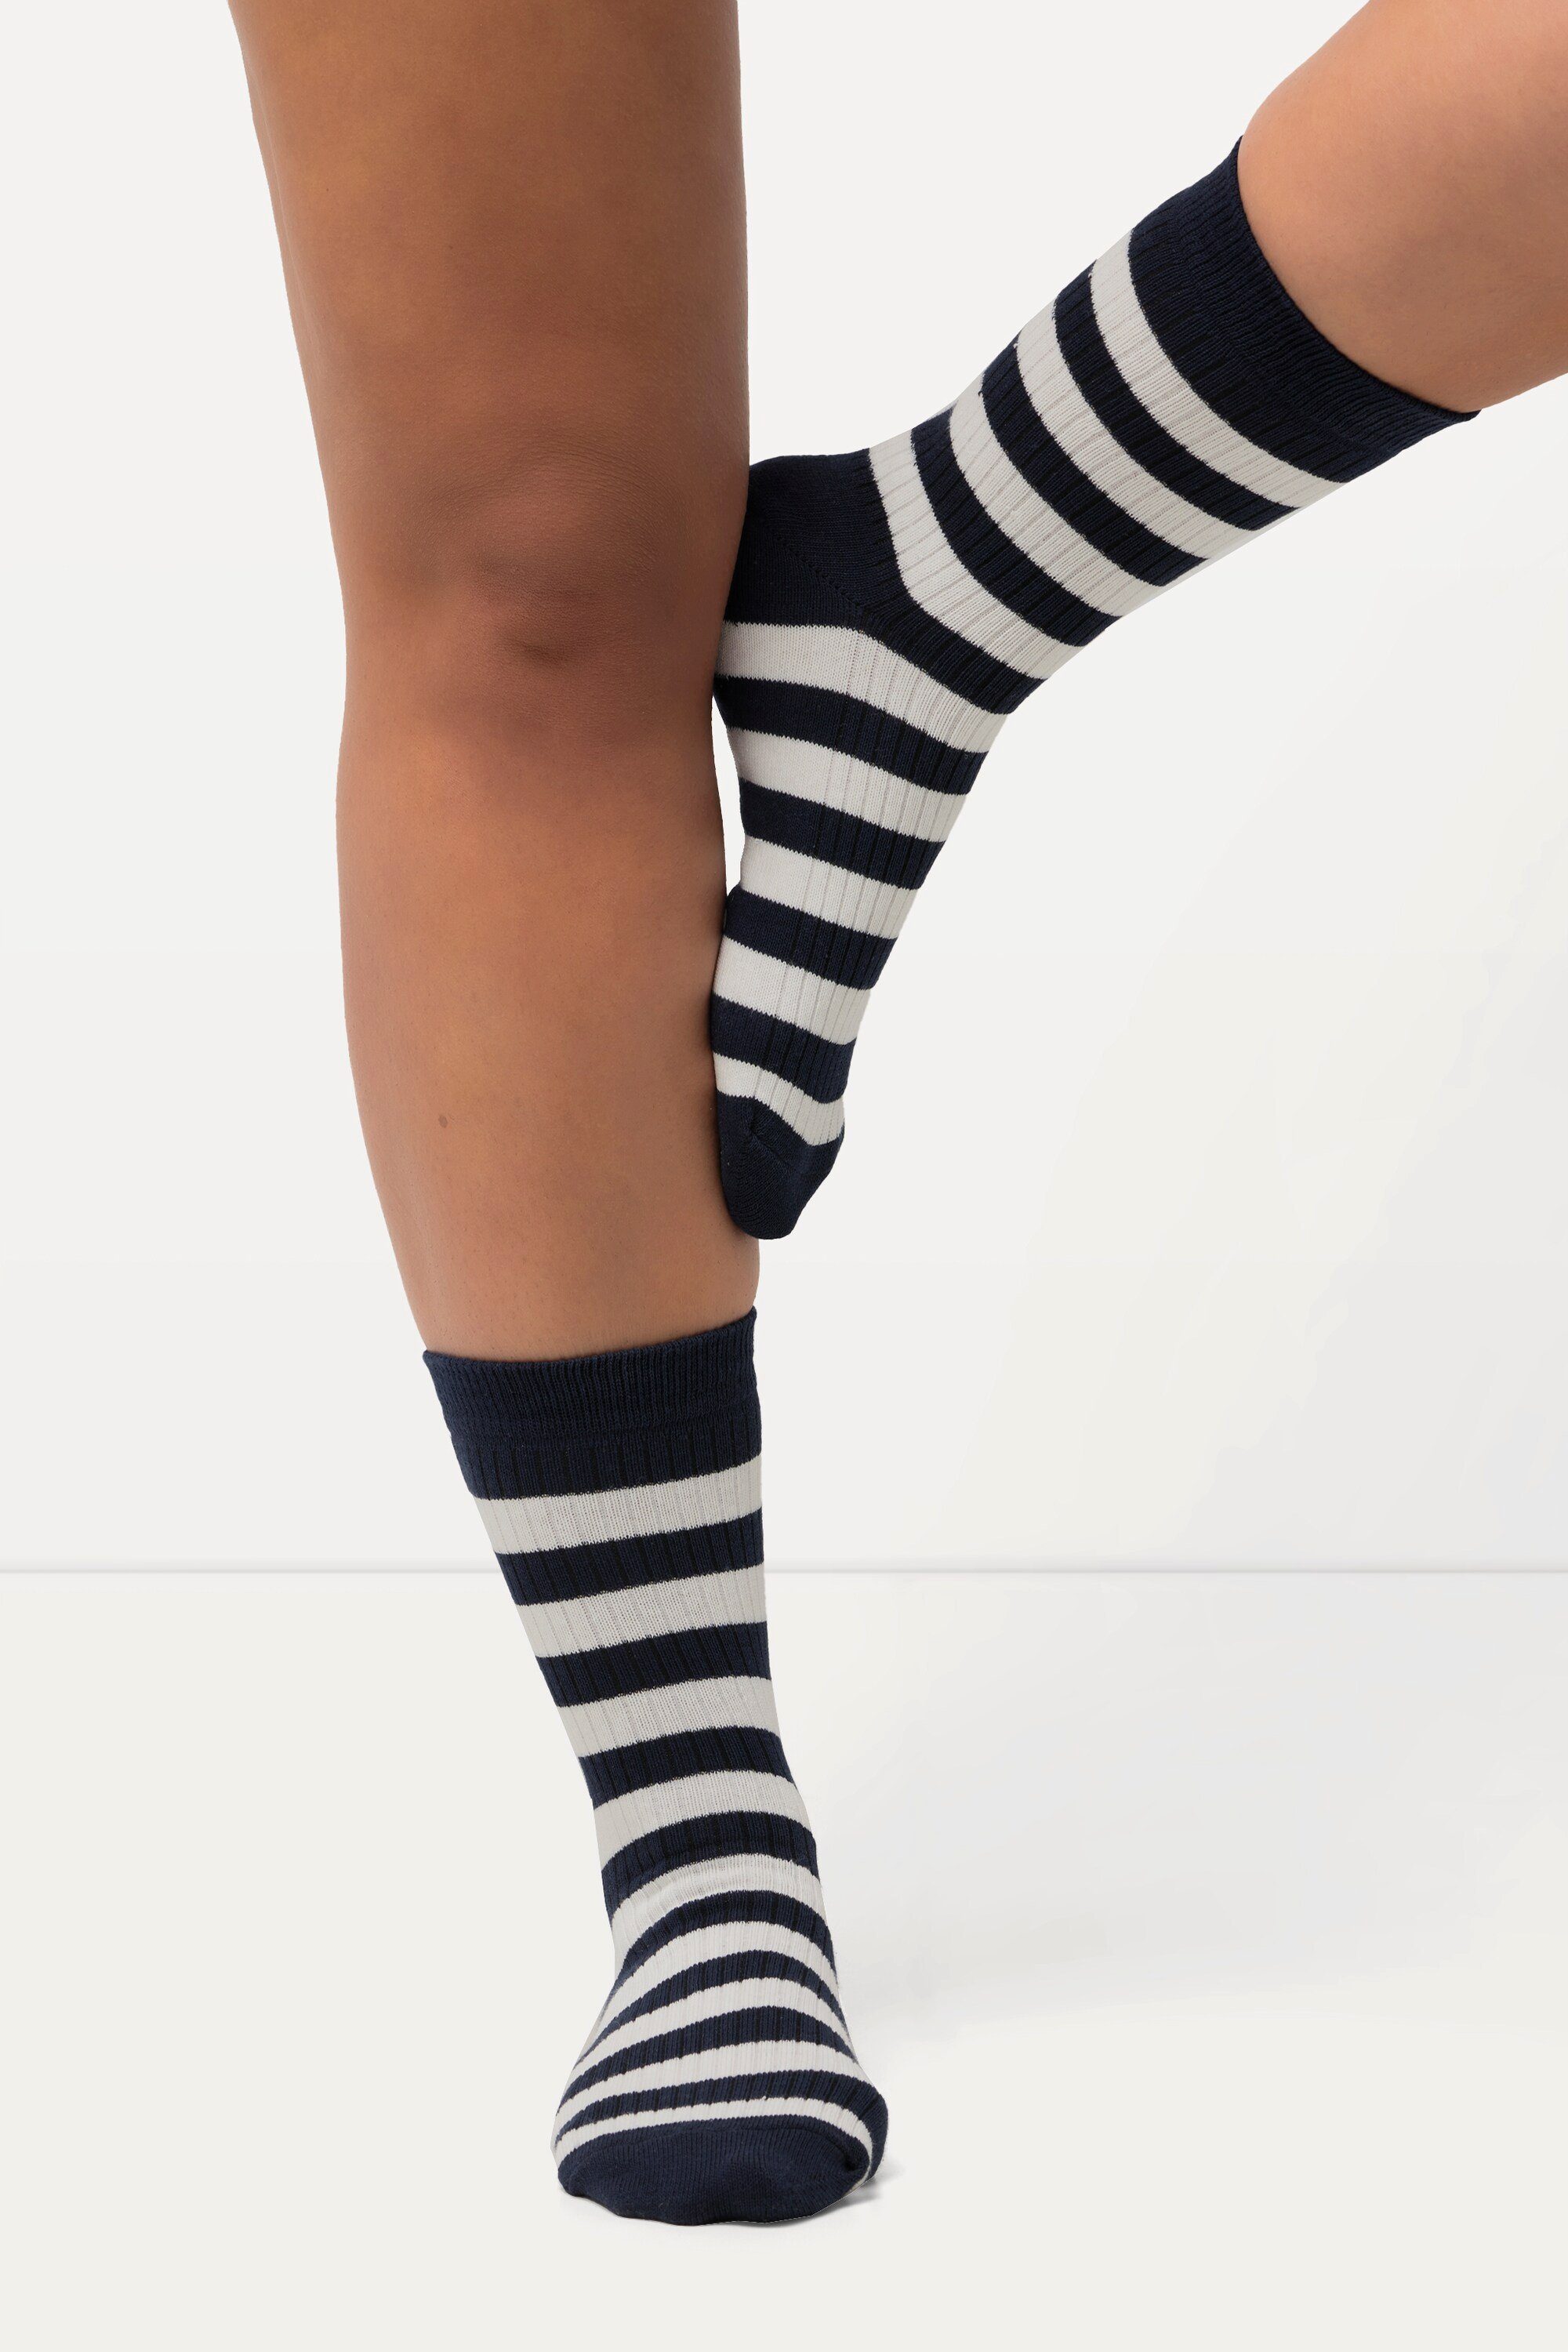 Gr Socken OTTO | 52 kaufen online